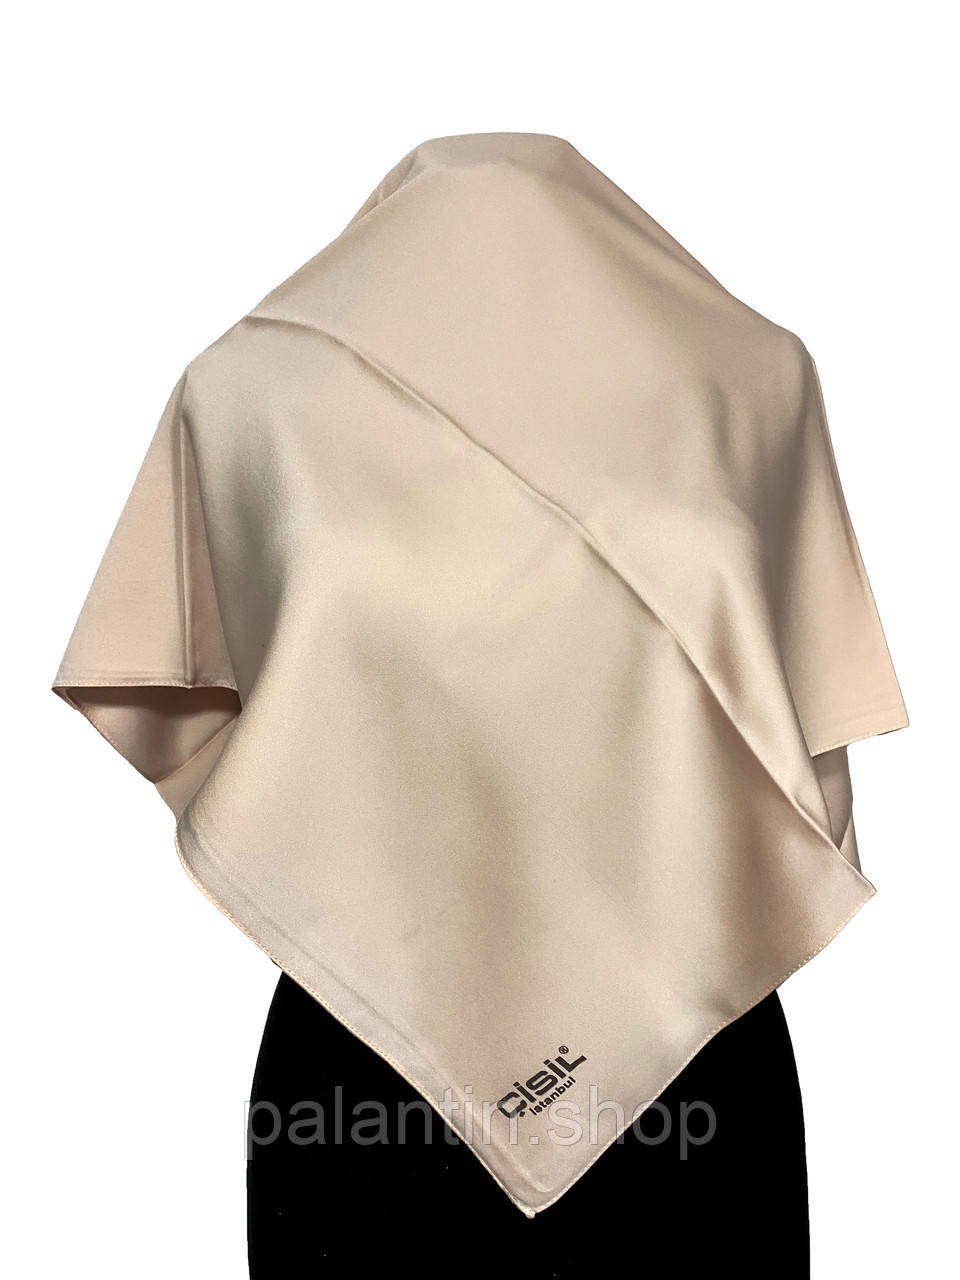 Жіноча хустка атласна,100 на 100 см, атлас віскоза, однотонна, кремового кольору, модель 2